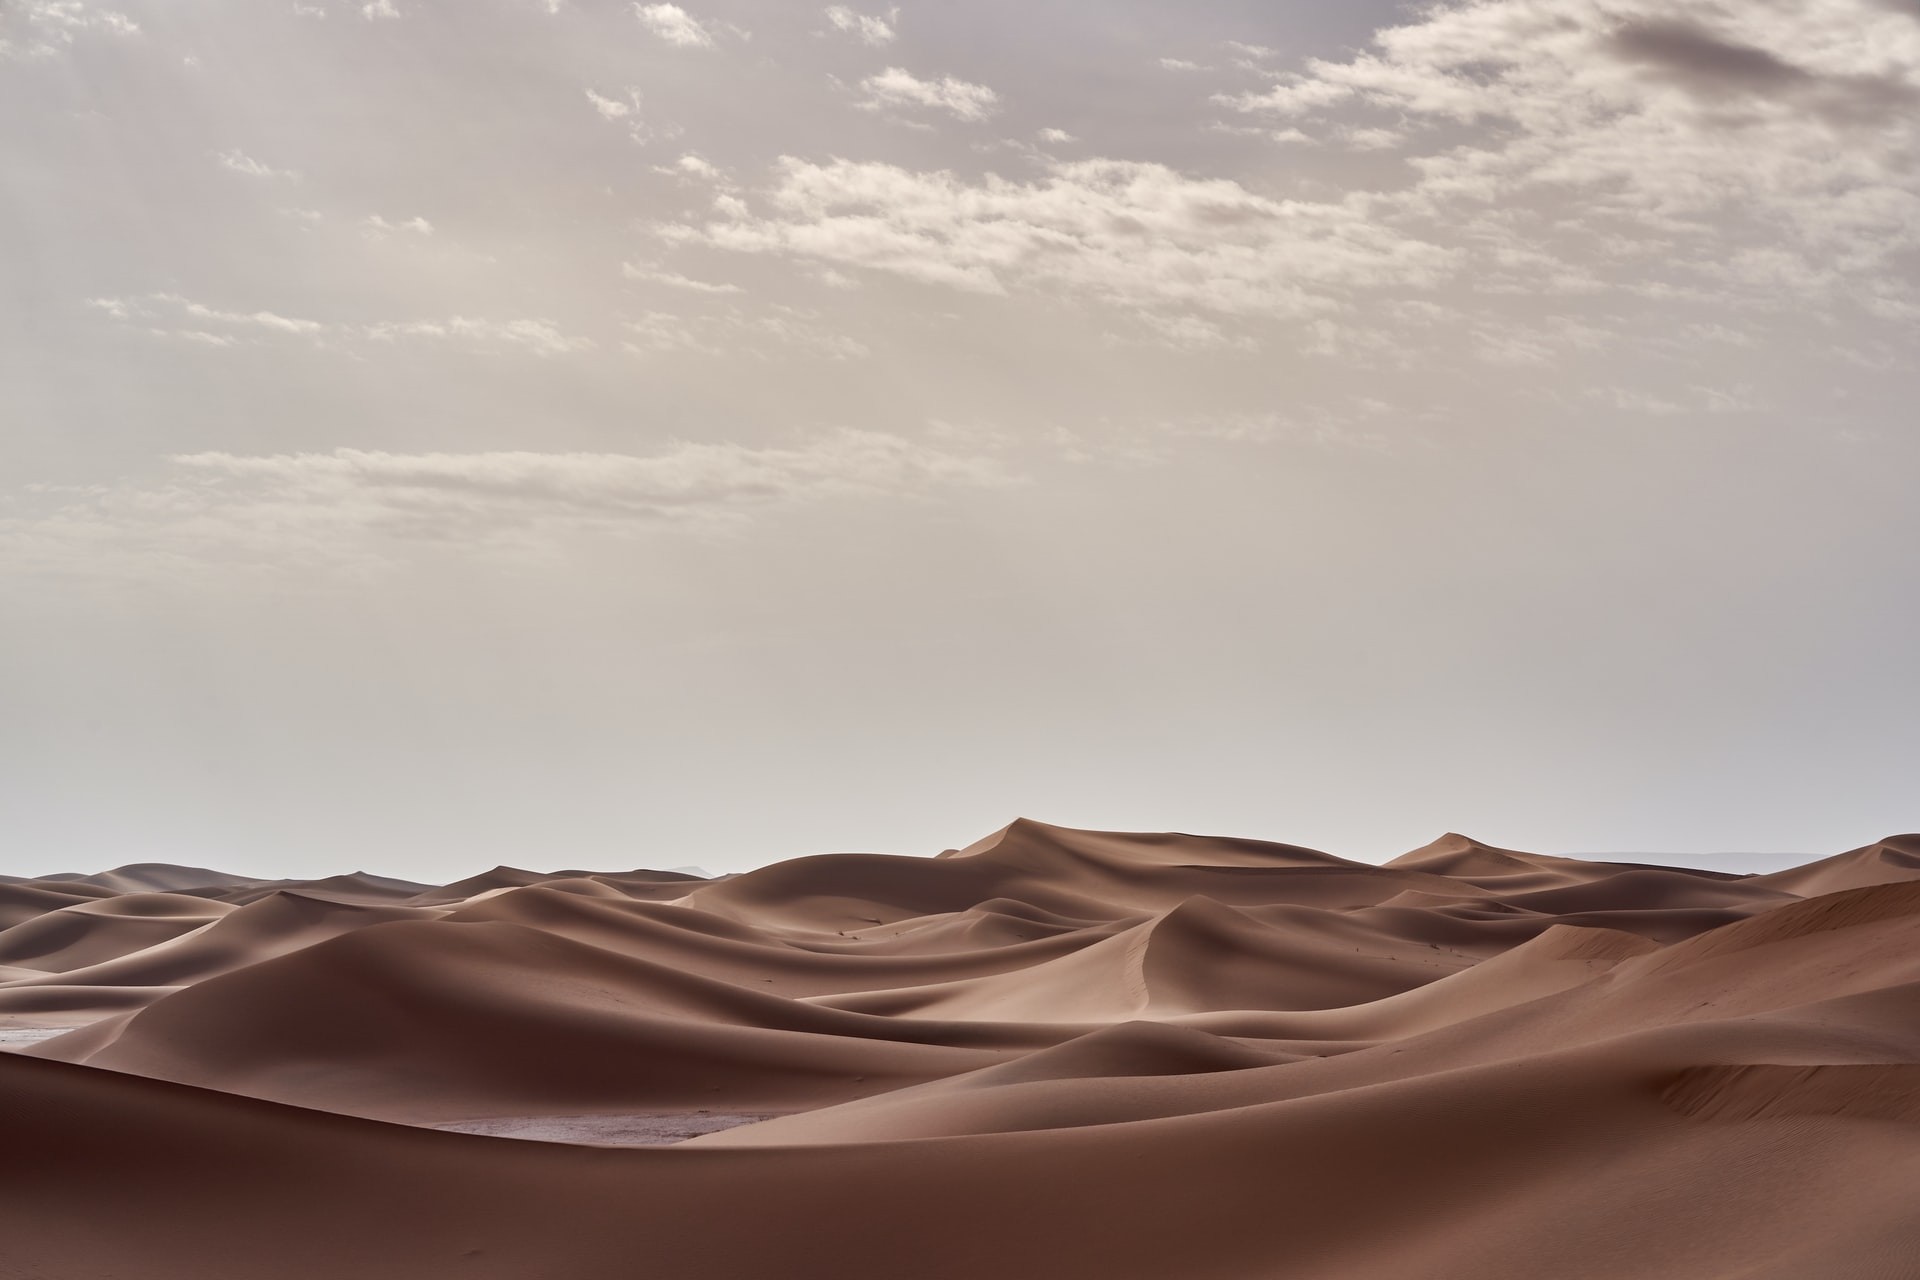  O deserto do Saara na África era completamente verde, descrito mais como uma pastagem (Foto: Wolfgang Hasselman/ Unsplash)